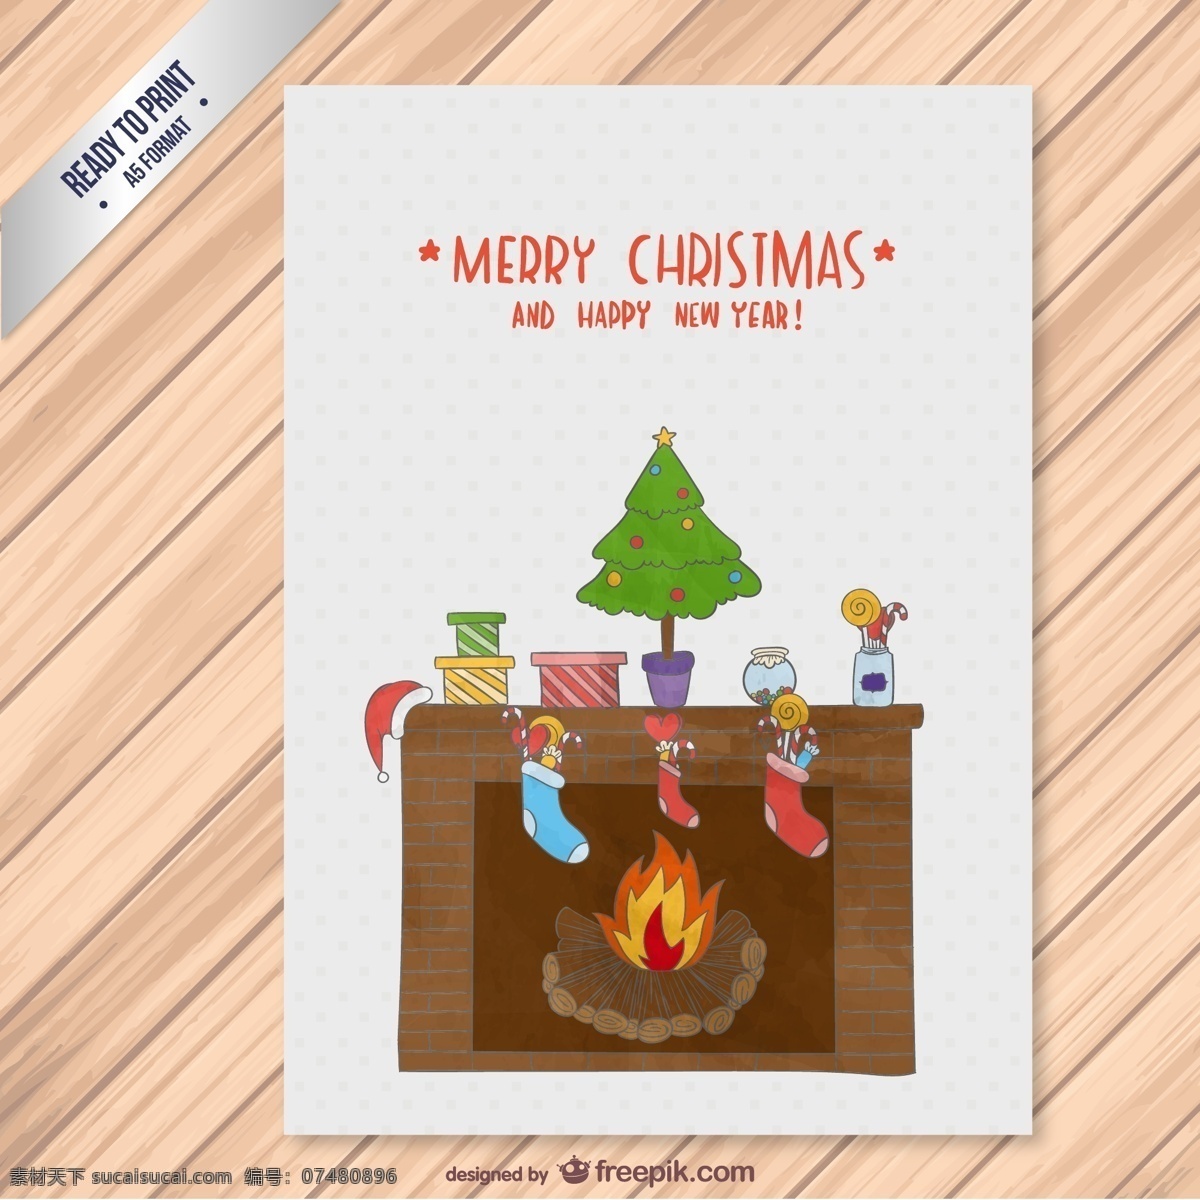 卡通 壁炉 圣诞贺卡 矢量 圣诞 圣诞树 圣诞节 贺卡 卡片 节日 圣诞袜 袜子 火焰 火花 火光 木板 木纹 木质 木制 背景 盆栽 海报 圣诞节素材